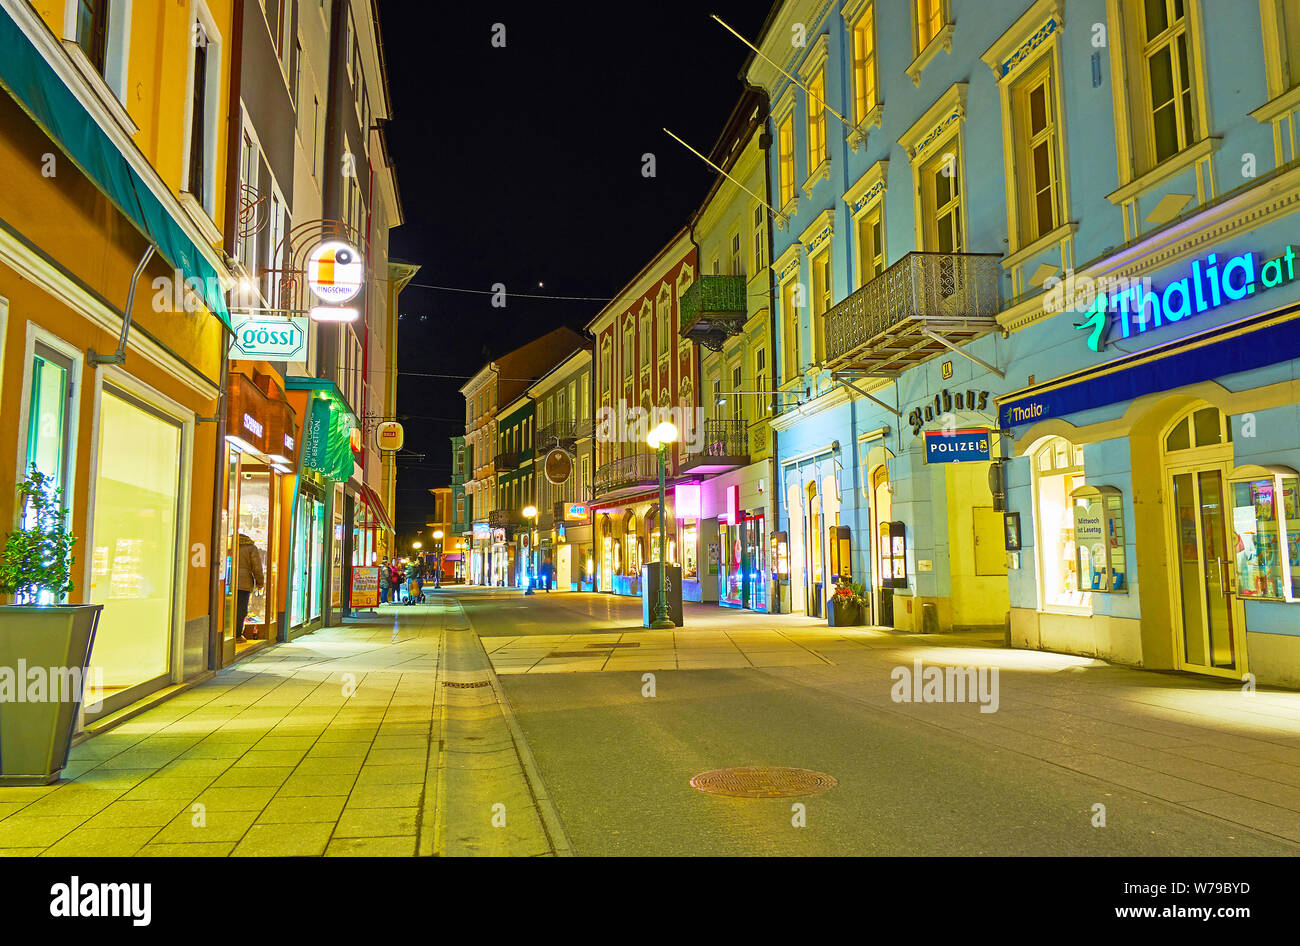 BAD Ischl Austria - 26 febbraio 2019: calma tranquilla passeggiata serale lungo la strada Pfarrgasse con molti colori segni luminosi e vintage lampioni, o Foto Stock